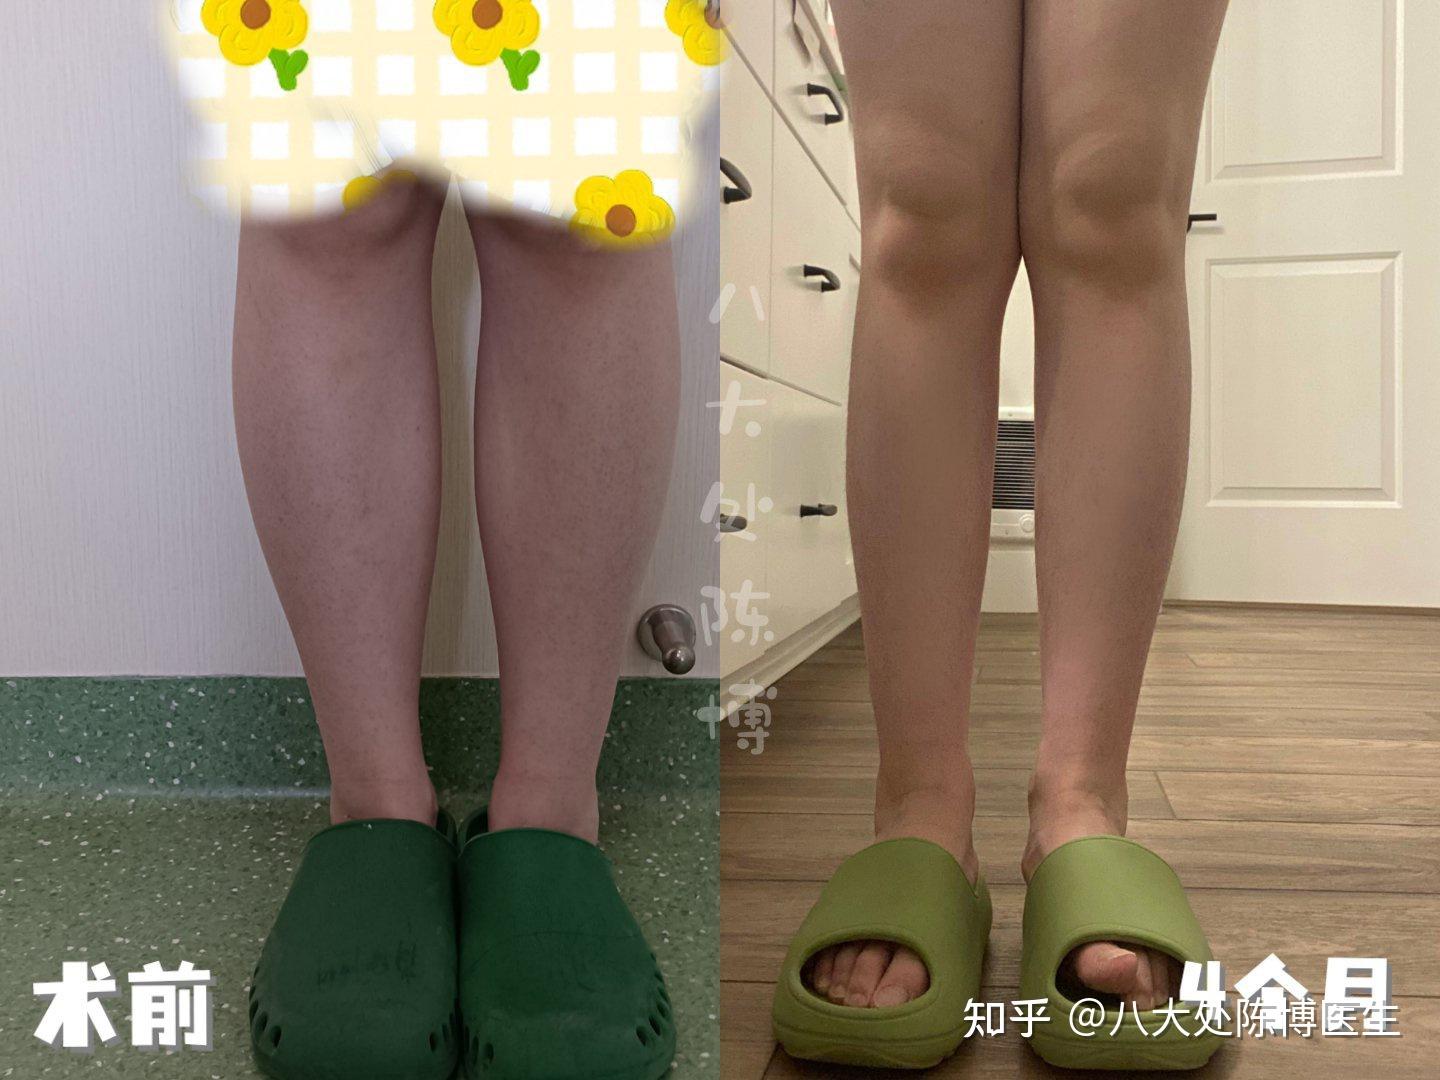 【瘦大腿操】日本YouTuber分享瘦大腿內側運動 2星期變纖幼美腿